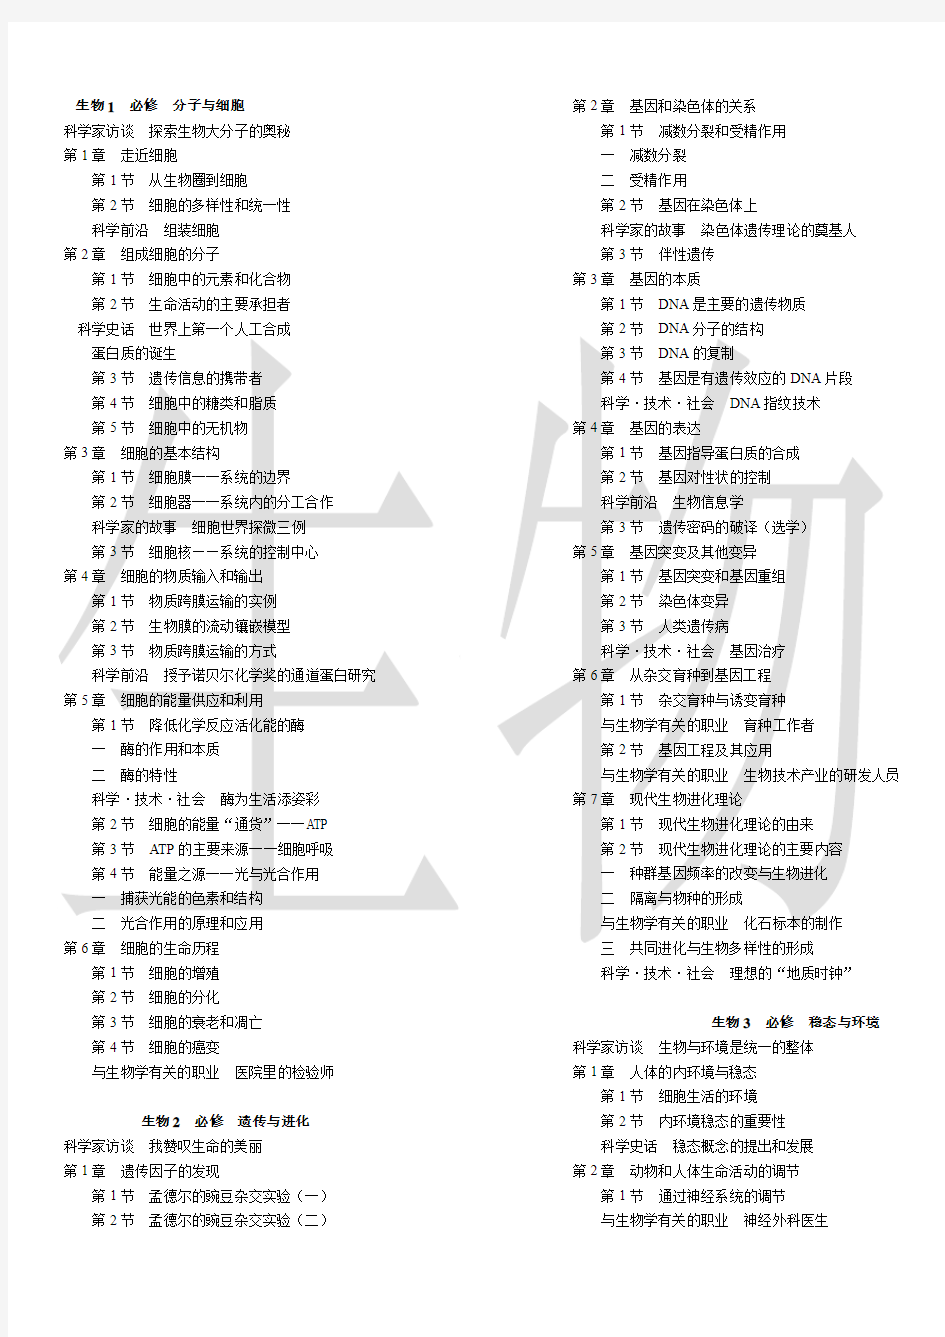 人教版高中生物教材目录(2011-2013辽宁省适用  分栏紧凑排版有生物水印便于打印)